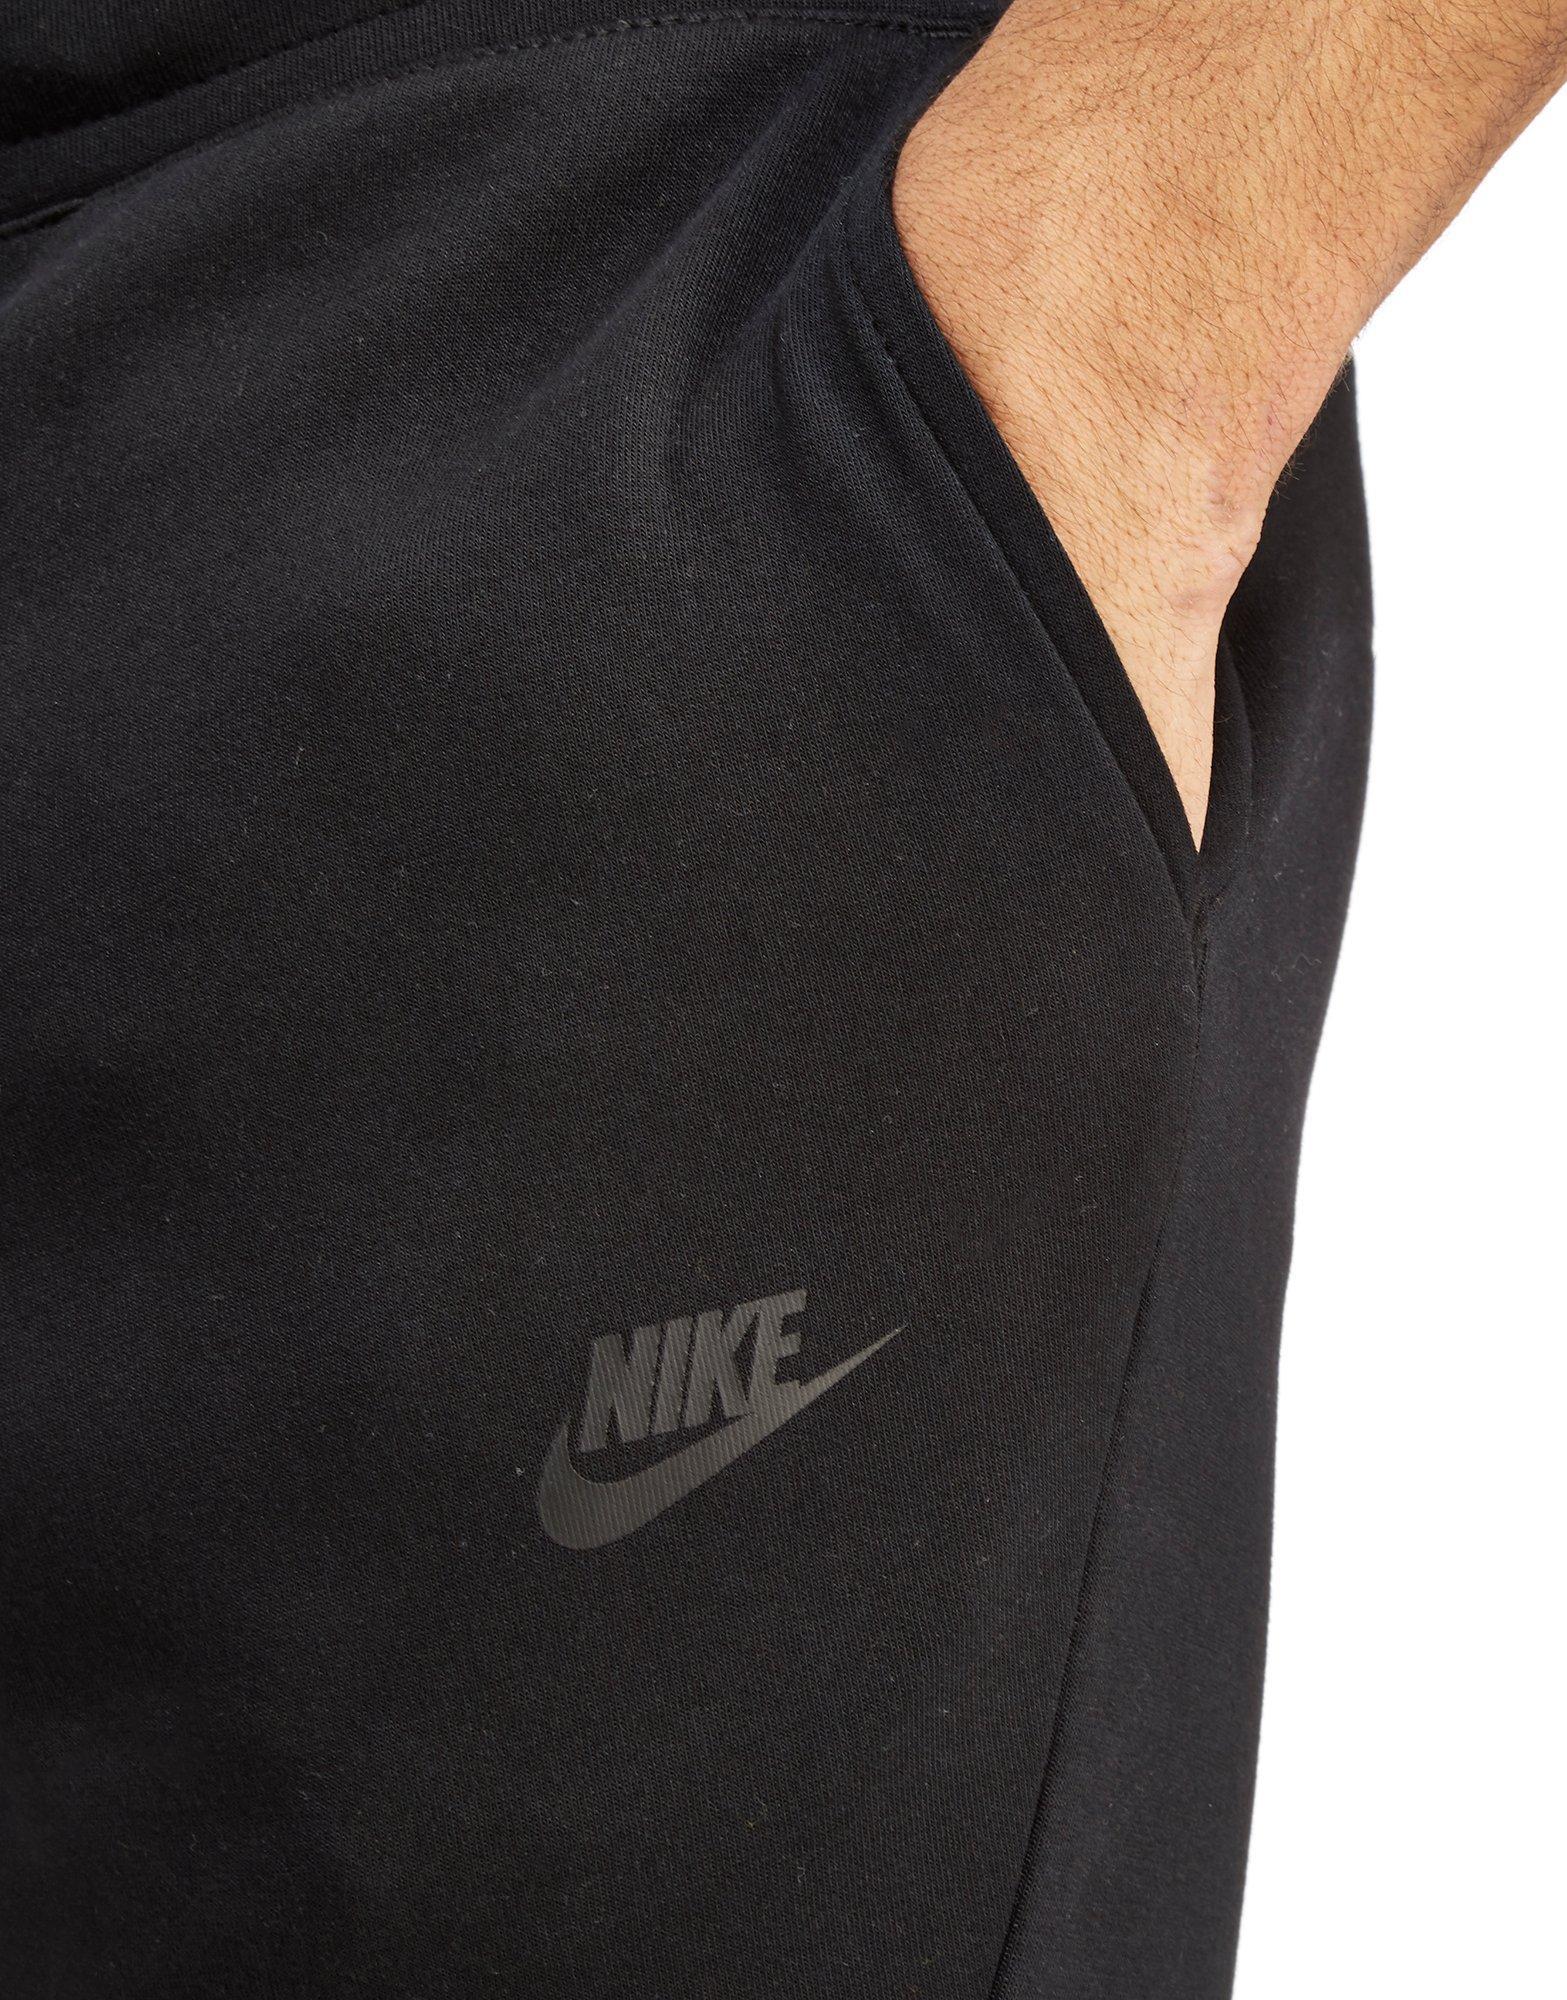 Nike Tech Fleece Pants in Black for Men - Lyst